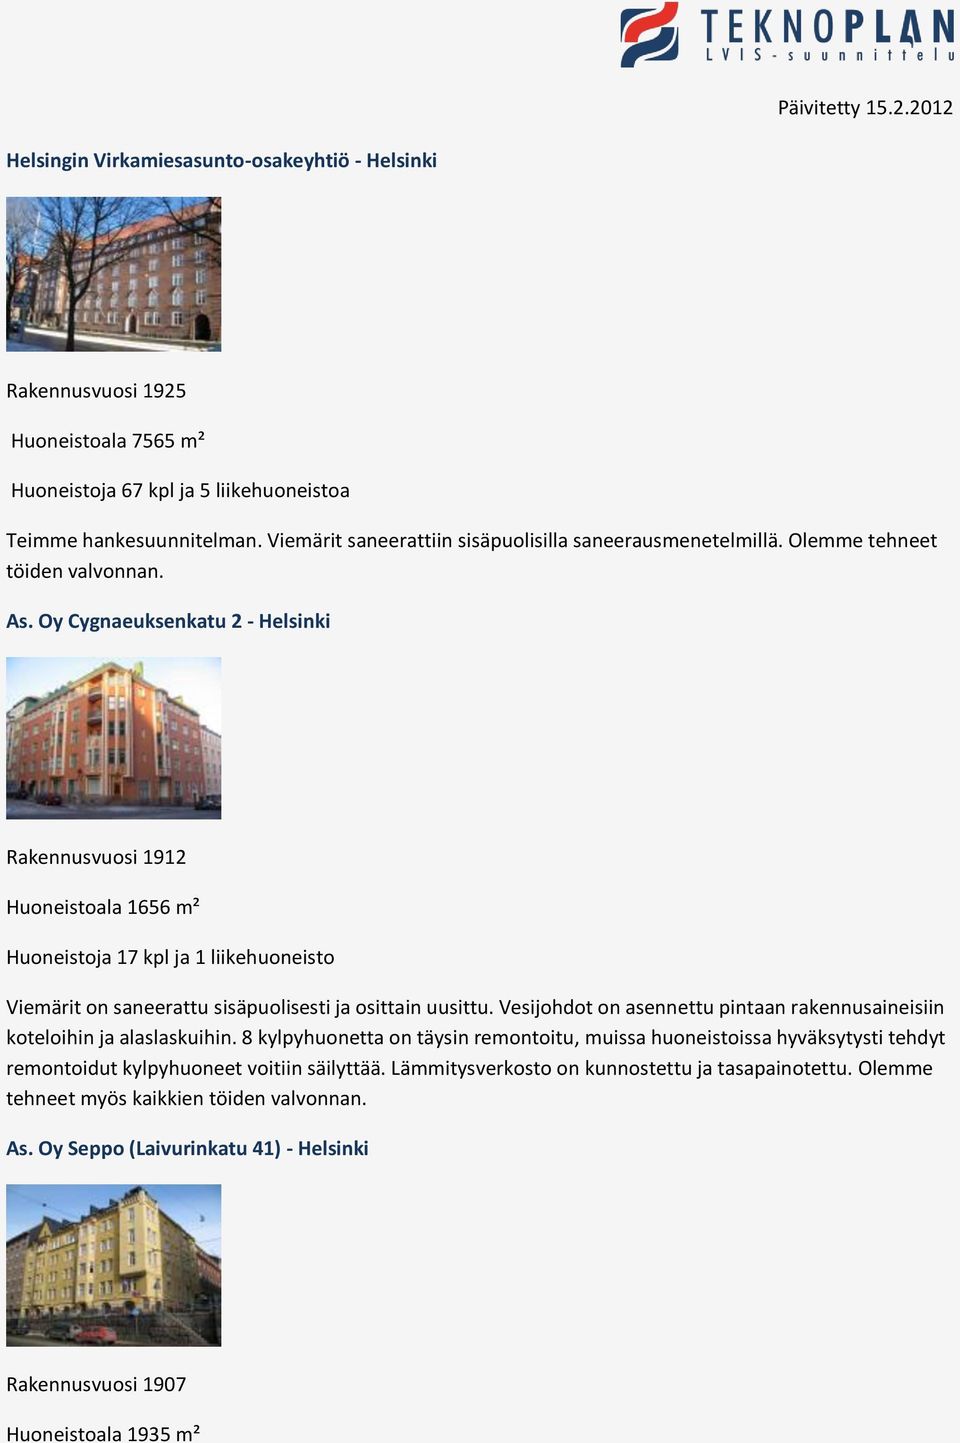 Oy Cygnaeuksenkatu 2 - Helsinki Rakennusvuosi 1912 Huoneistoala 1656 m² Huoneistoja 17 kpl ja 1 liikehuoneisto Viemärit on saneerattu sisäpuolisesti ja osittain uusittu.